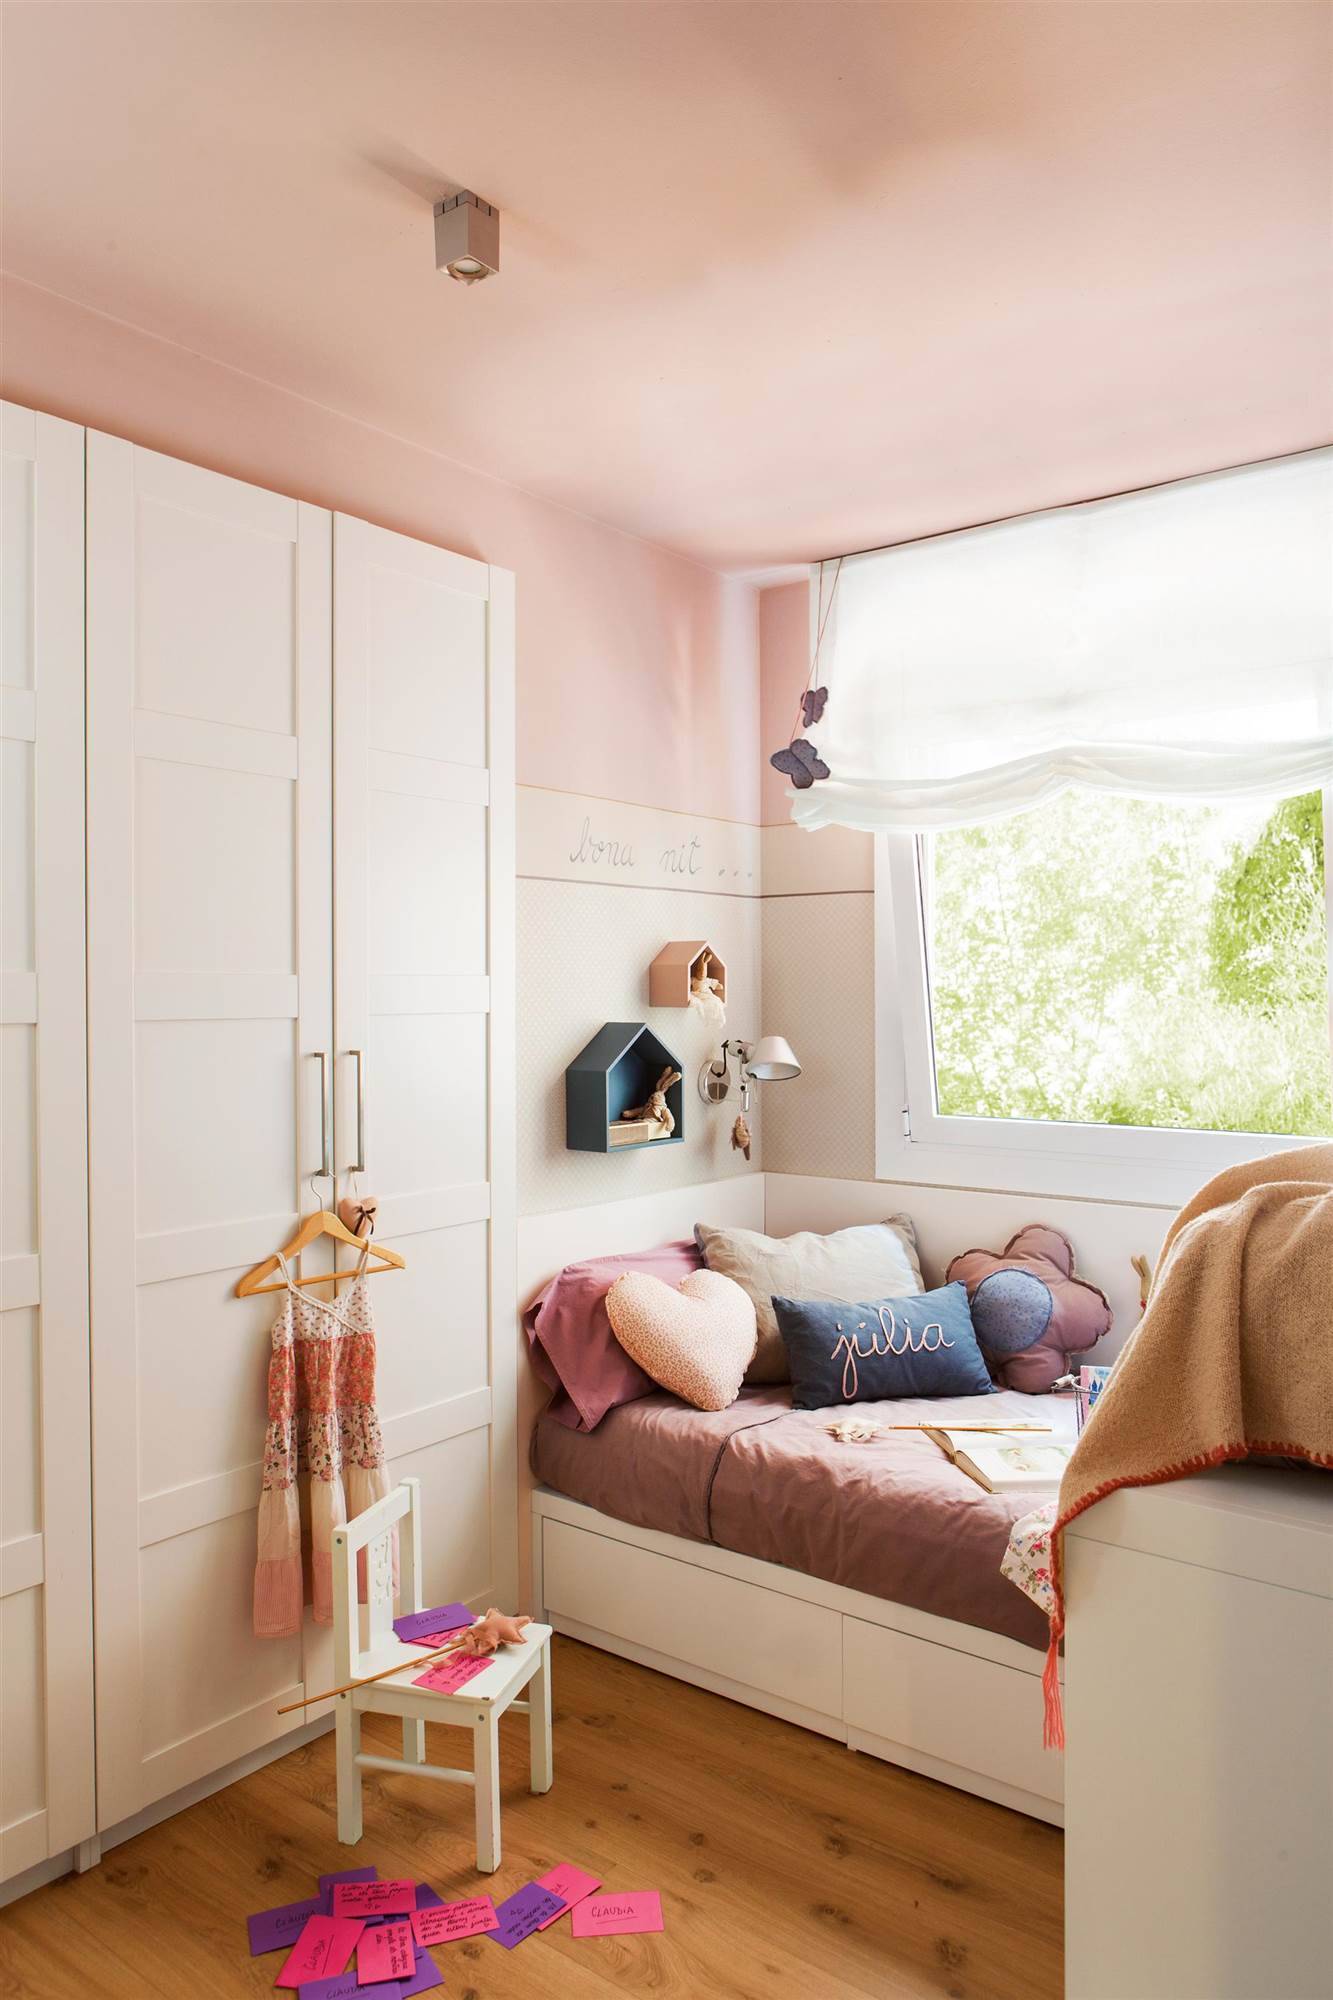 Dormitorio infantil pintado en color rosa con mobiliario blanco y cama tipo nido 00412101